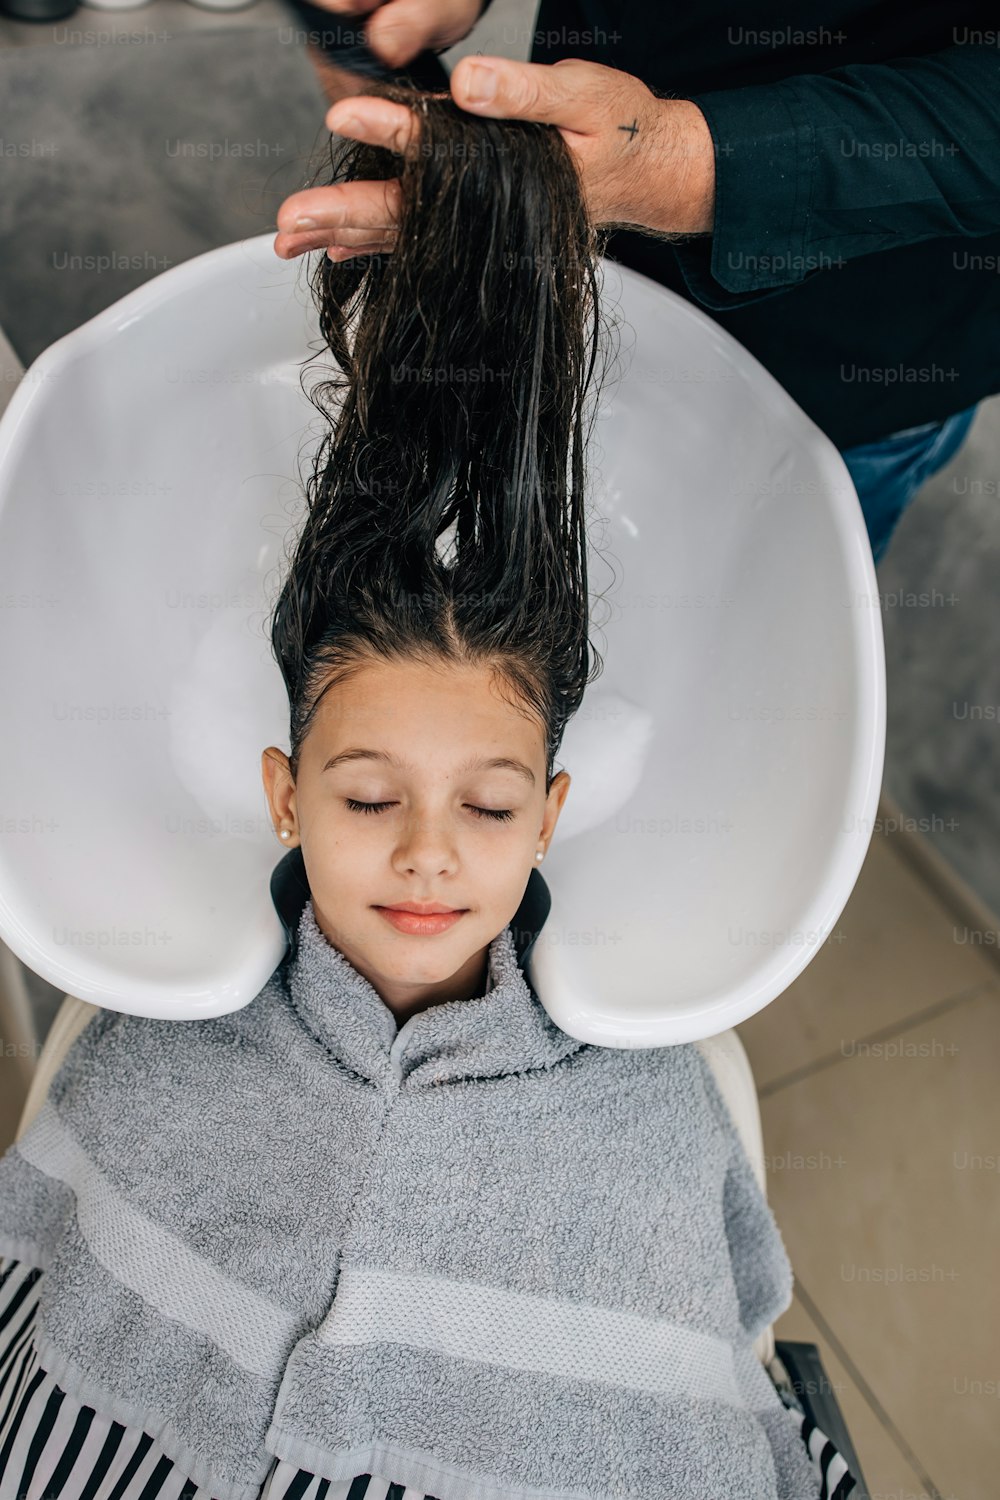 전문 미용사가 부드럽게 머리를 씻는 동안 헤어스타일 치료를 받는 어린 소녀.